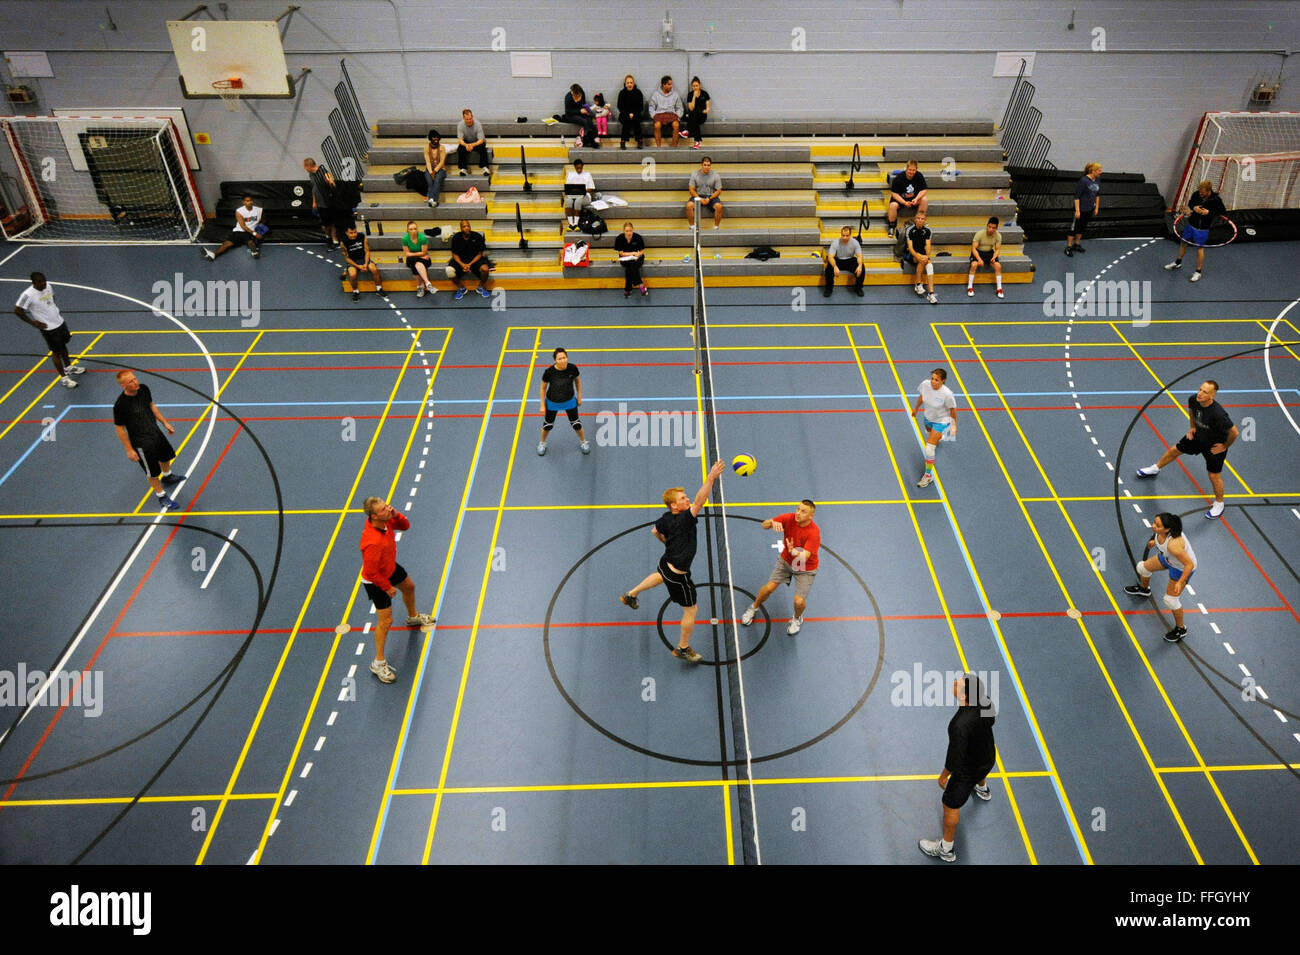 Les aviateurs et les entrepreneurs danois participent à un tournoi de volley-ball au gymnase. AB Thule Banque D'Images